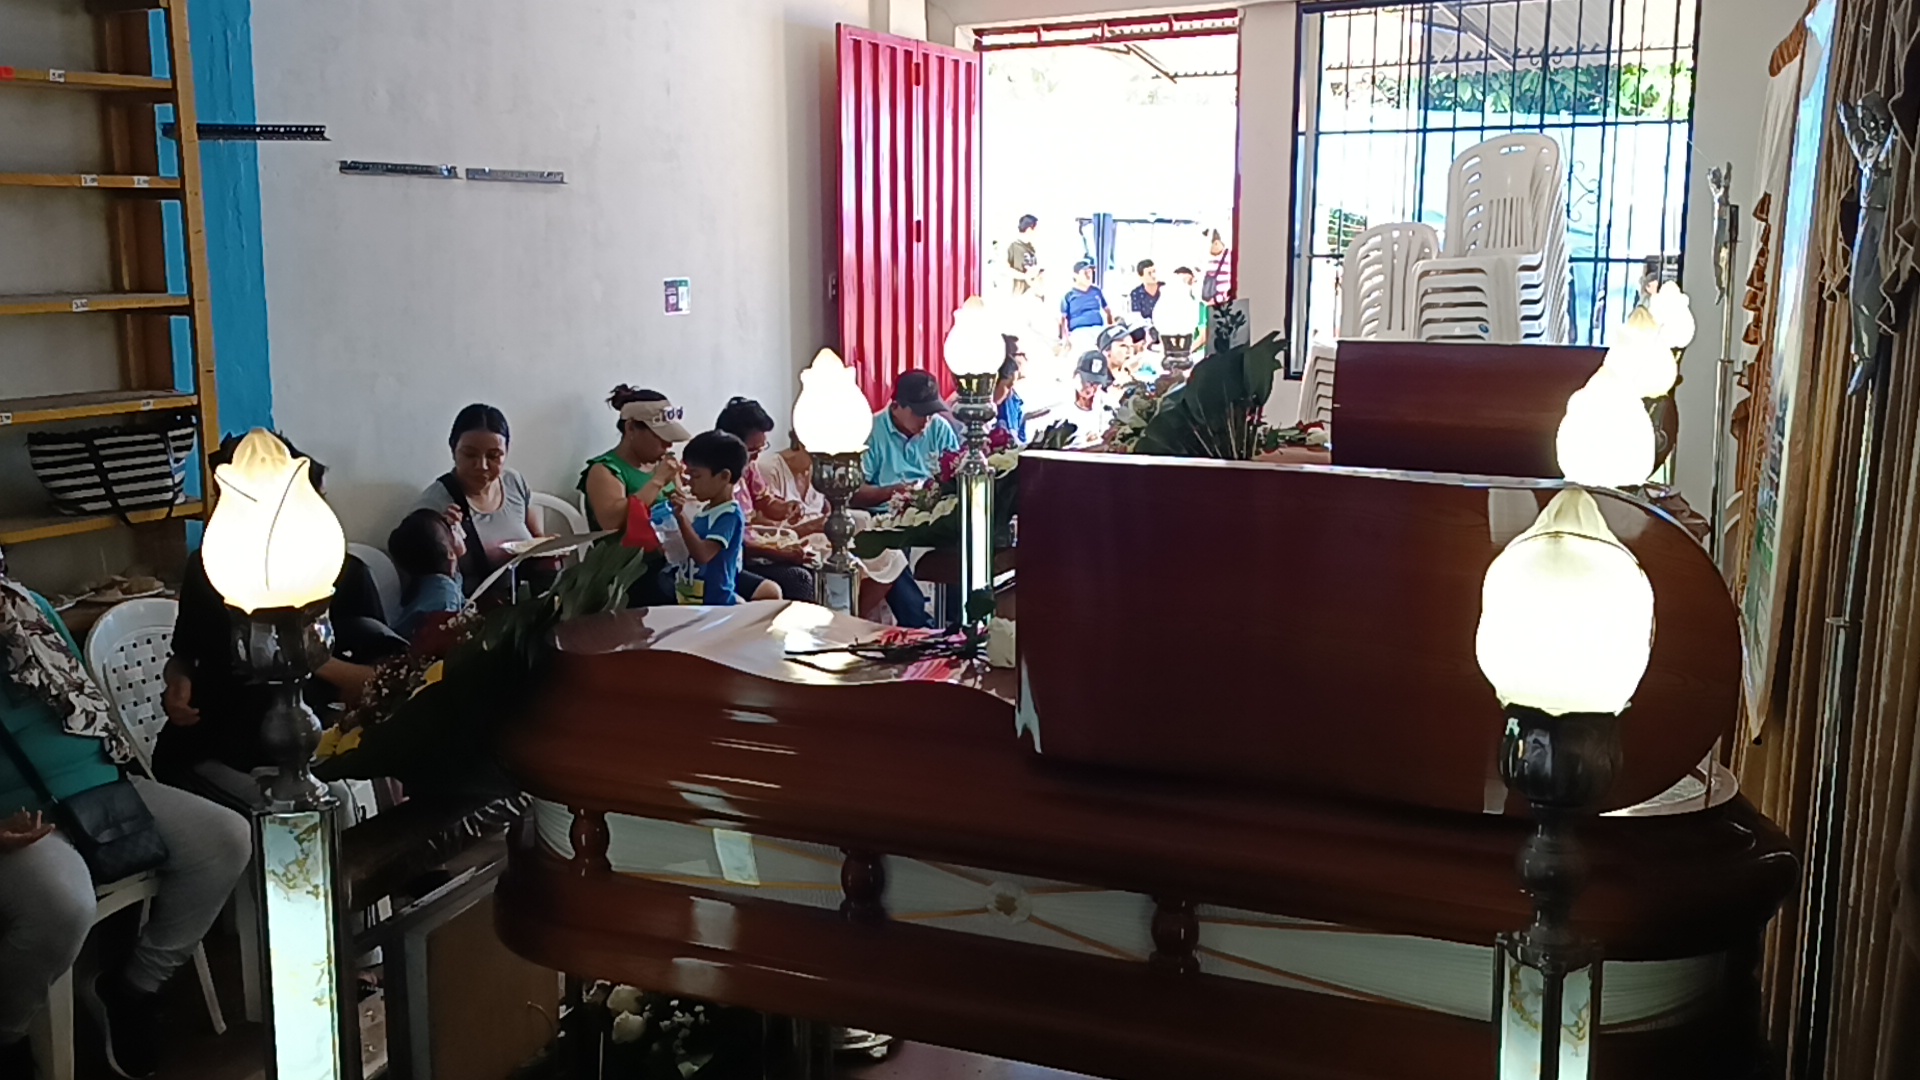 Indignación en Tarapoto por presuntos precios exorbitantes en el cementerio general1